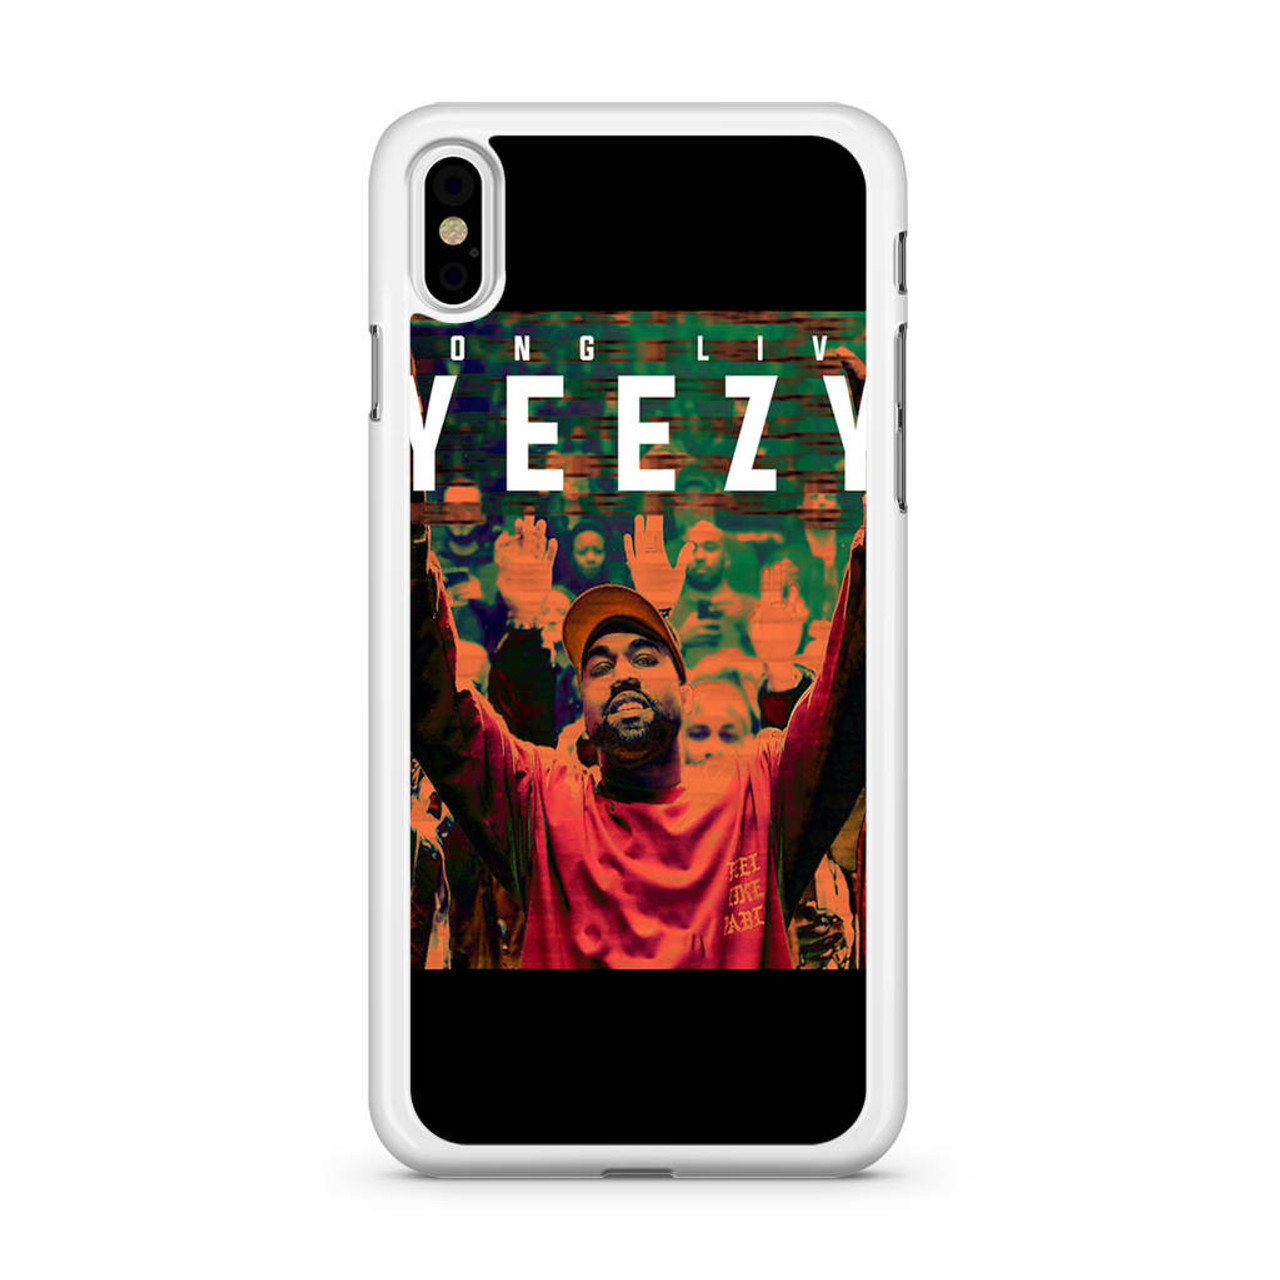 yeezy iphone x case